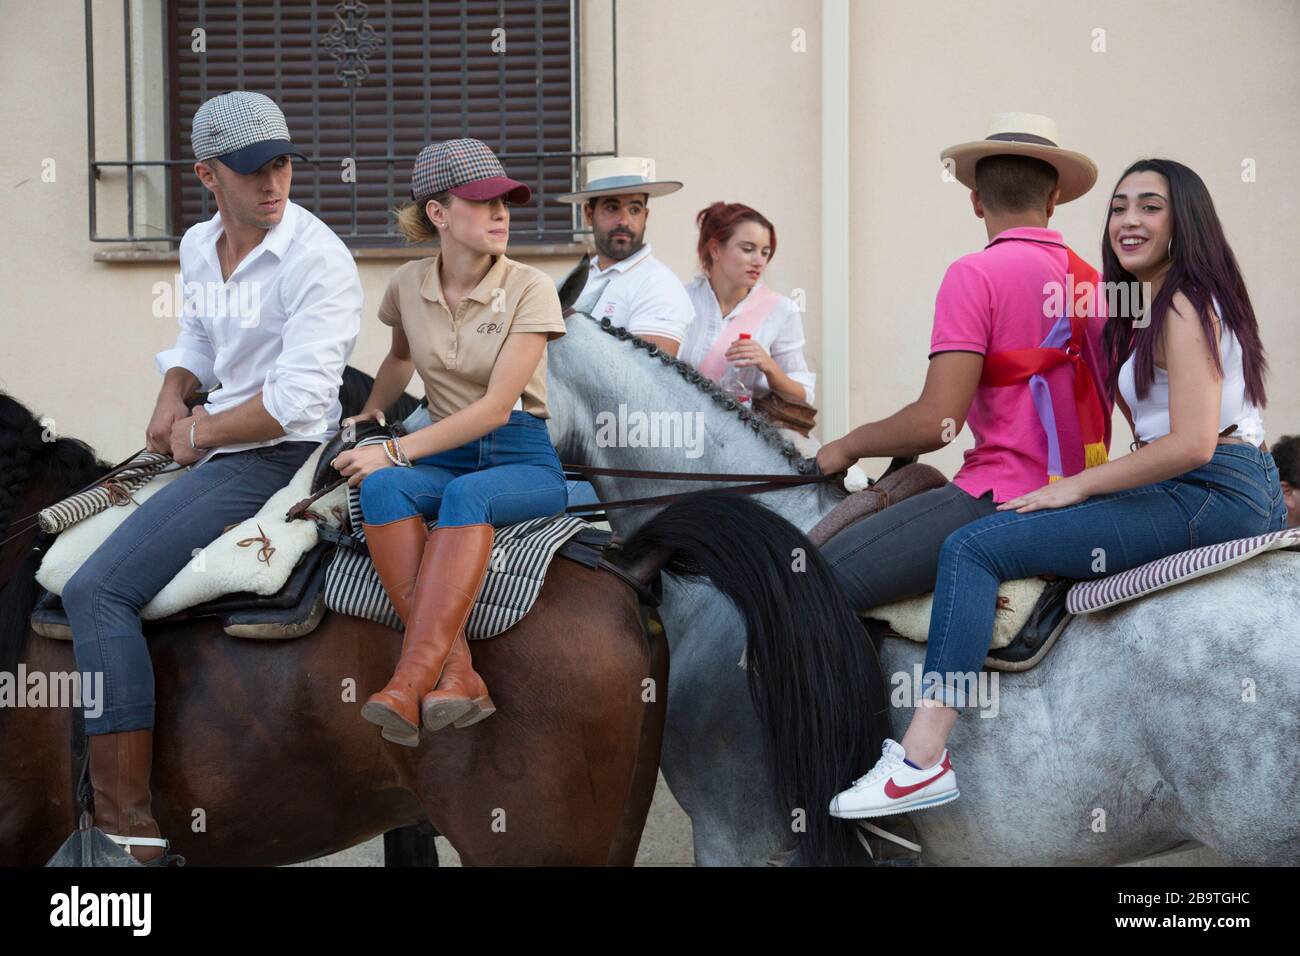 Las parejas jóvenes viajan a caballo por las calles durante un festival de verano en Monachil, Granada, Andalucía, España Foto de stock